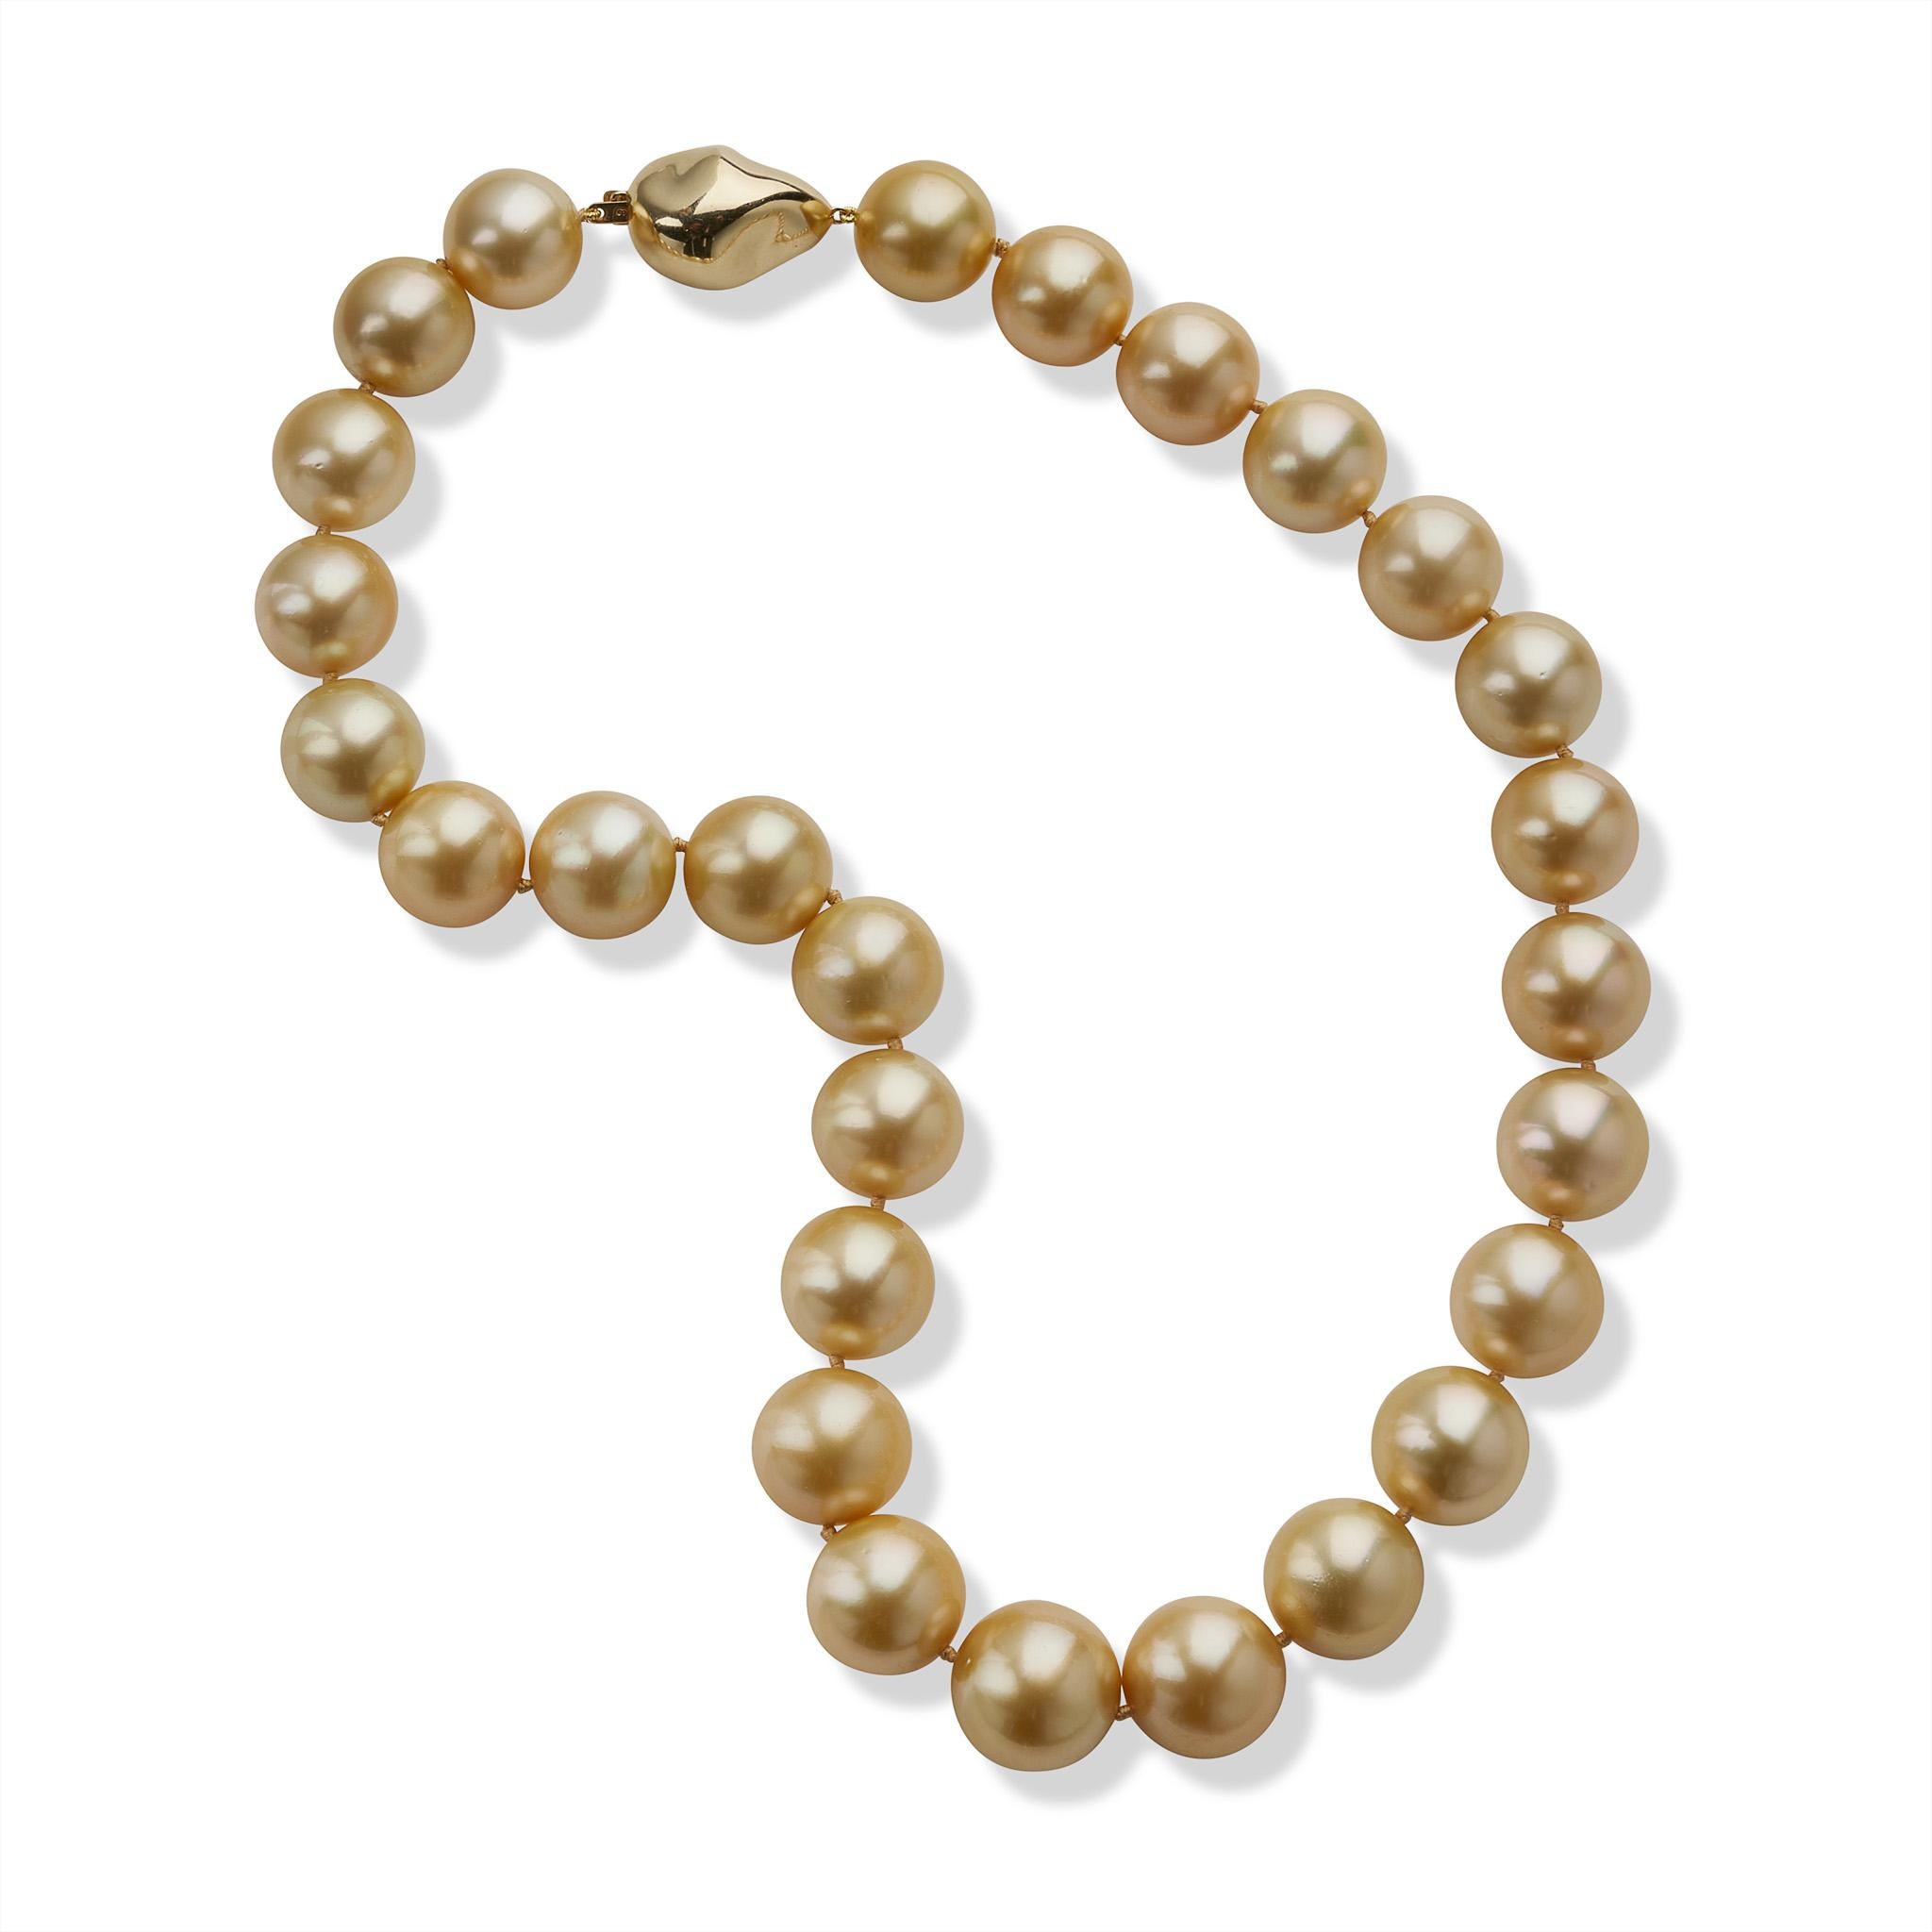 Diese zeitgenössische Halskette besteht aus 27 naturfarbenen, goldenen Südsee-Zuchtperlen mit einer Größe von ca. 17,20 bis 15,00 mm. Die runden goldenen Perlen werden durch eine barocke 14-karätige Goldschließe vervollständigt und haben einen Hauch